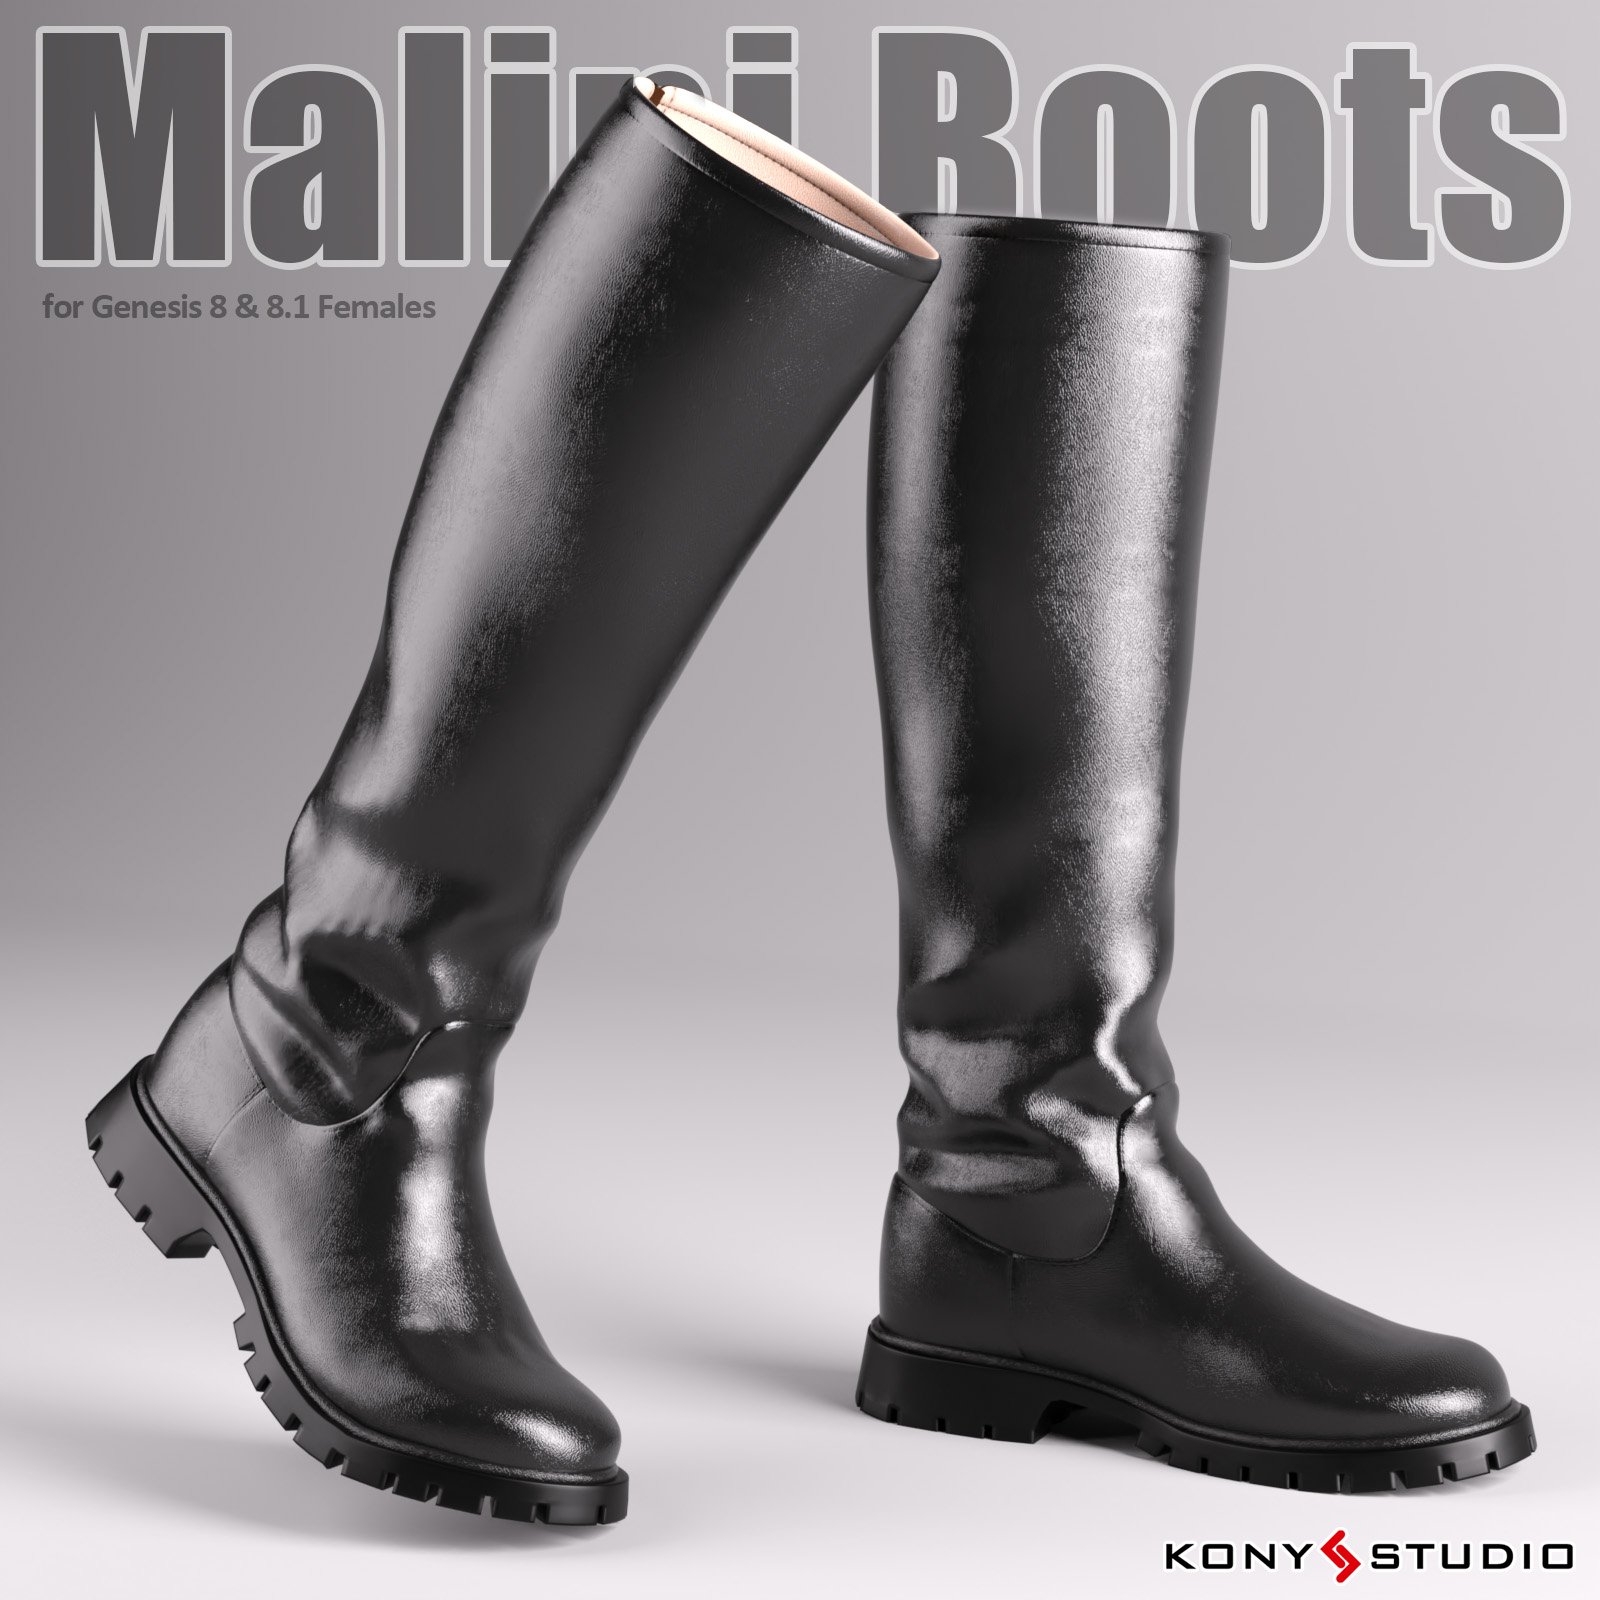 Malini Boots For G8 & 8.1F_DAZ3DDL